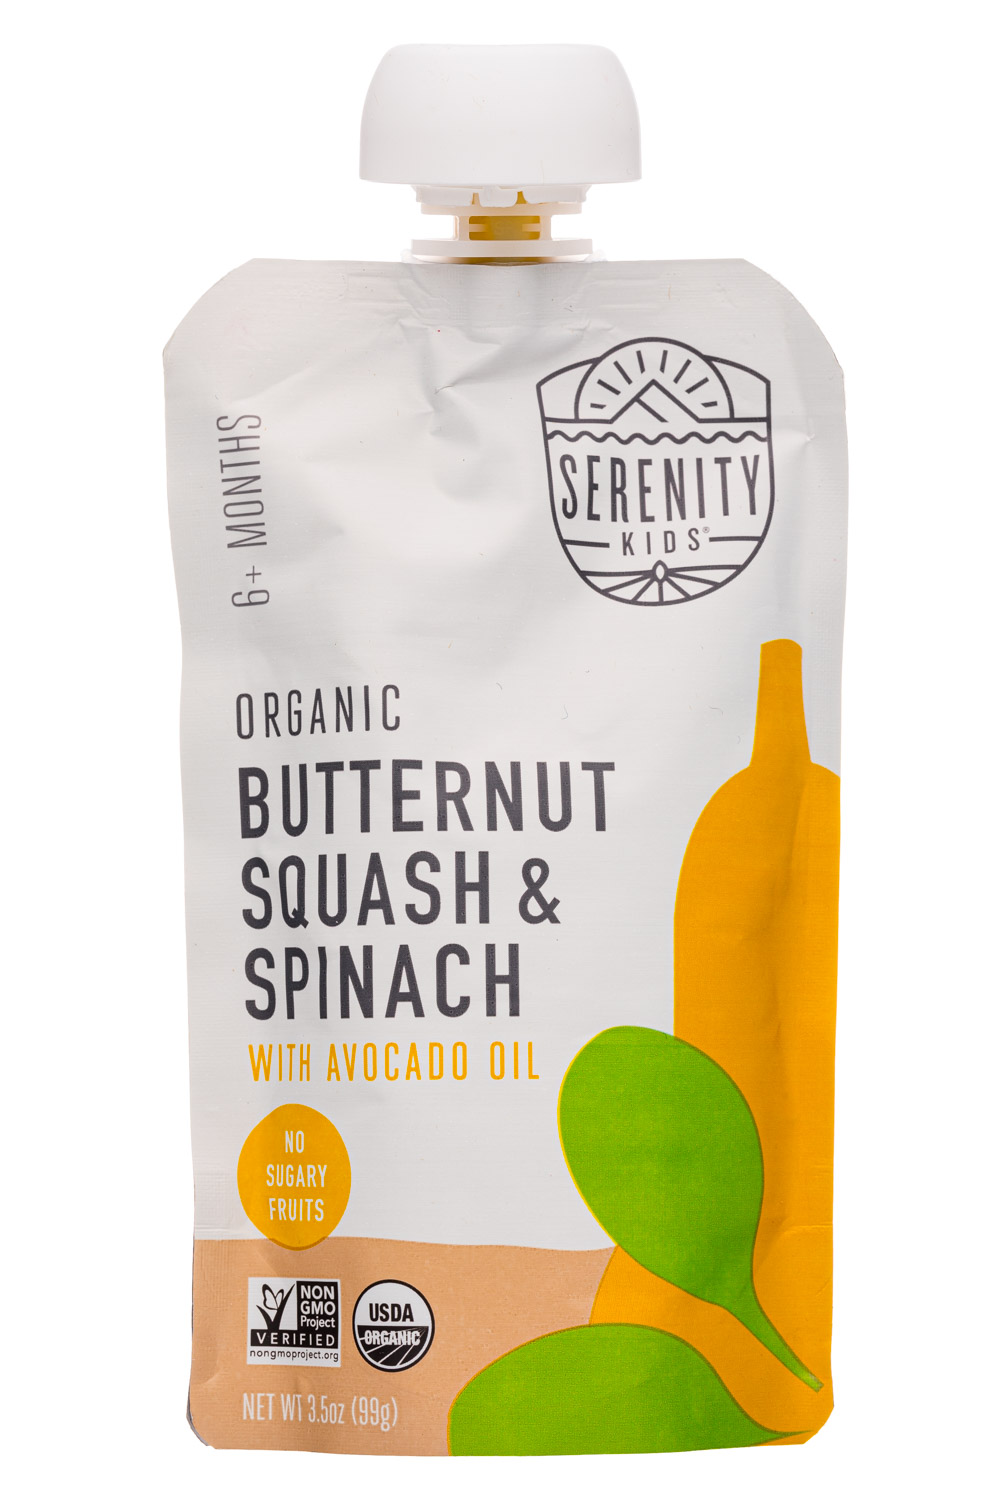 Organic Butternut Squash & Spinach